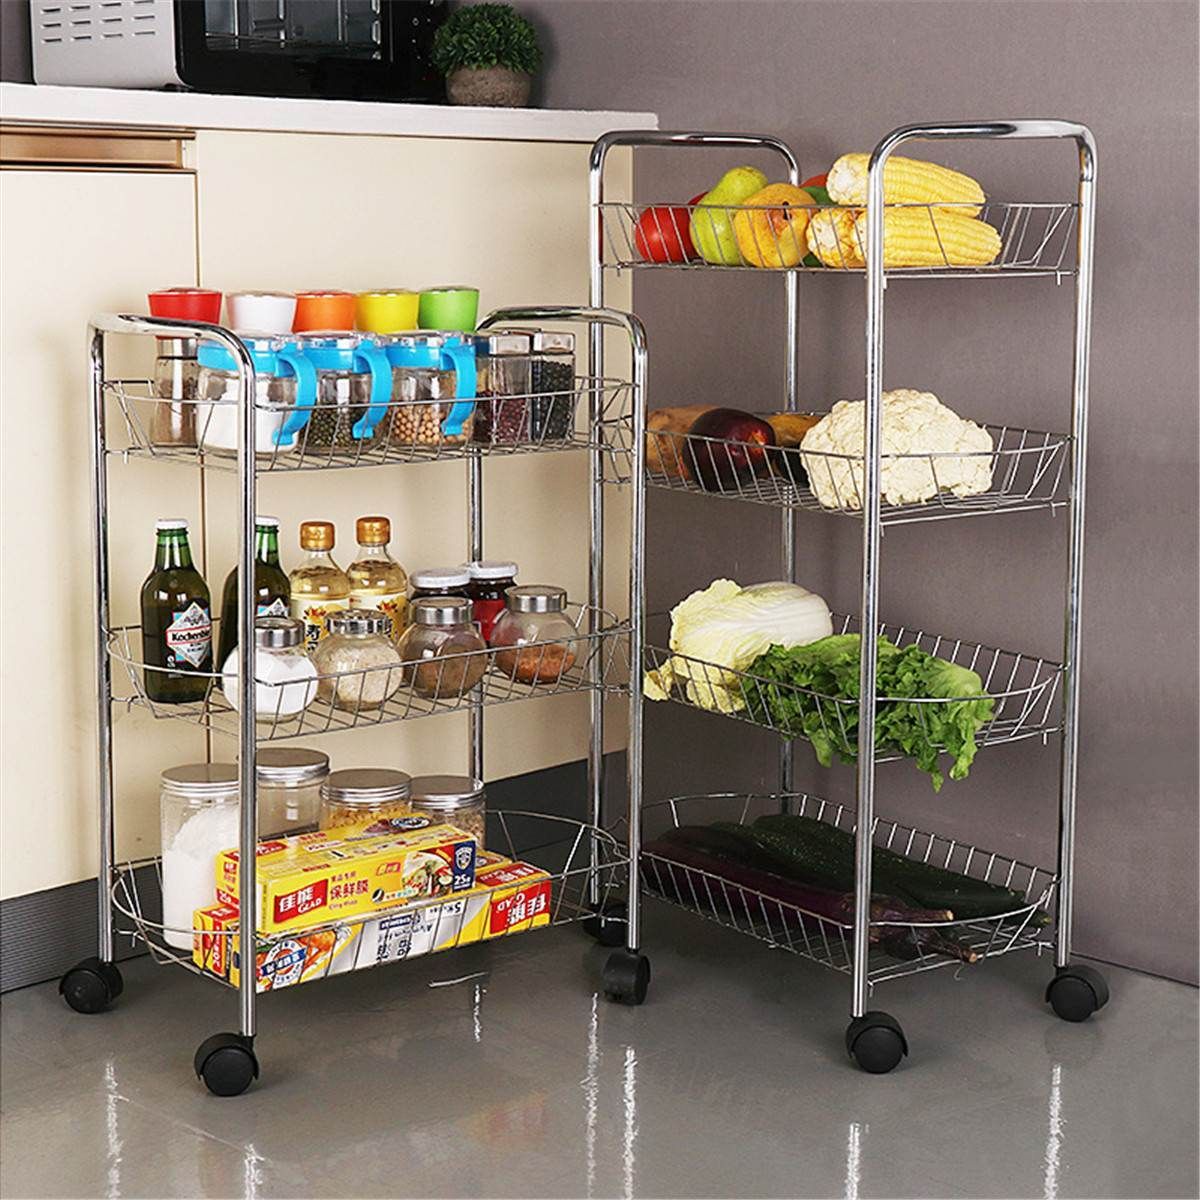 Kitchen Bathroom Trolley Rack Holder Basket Storage Shelf Organizer Cart w/Wheel